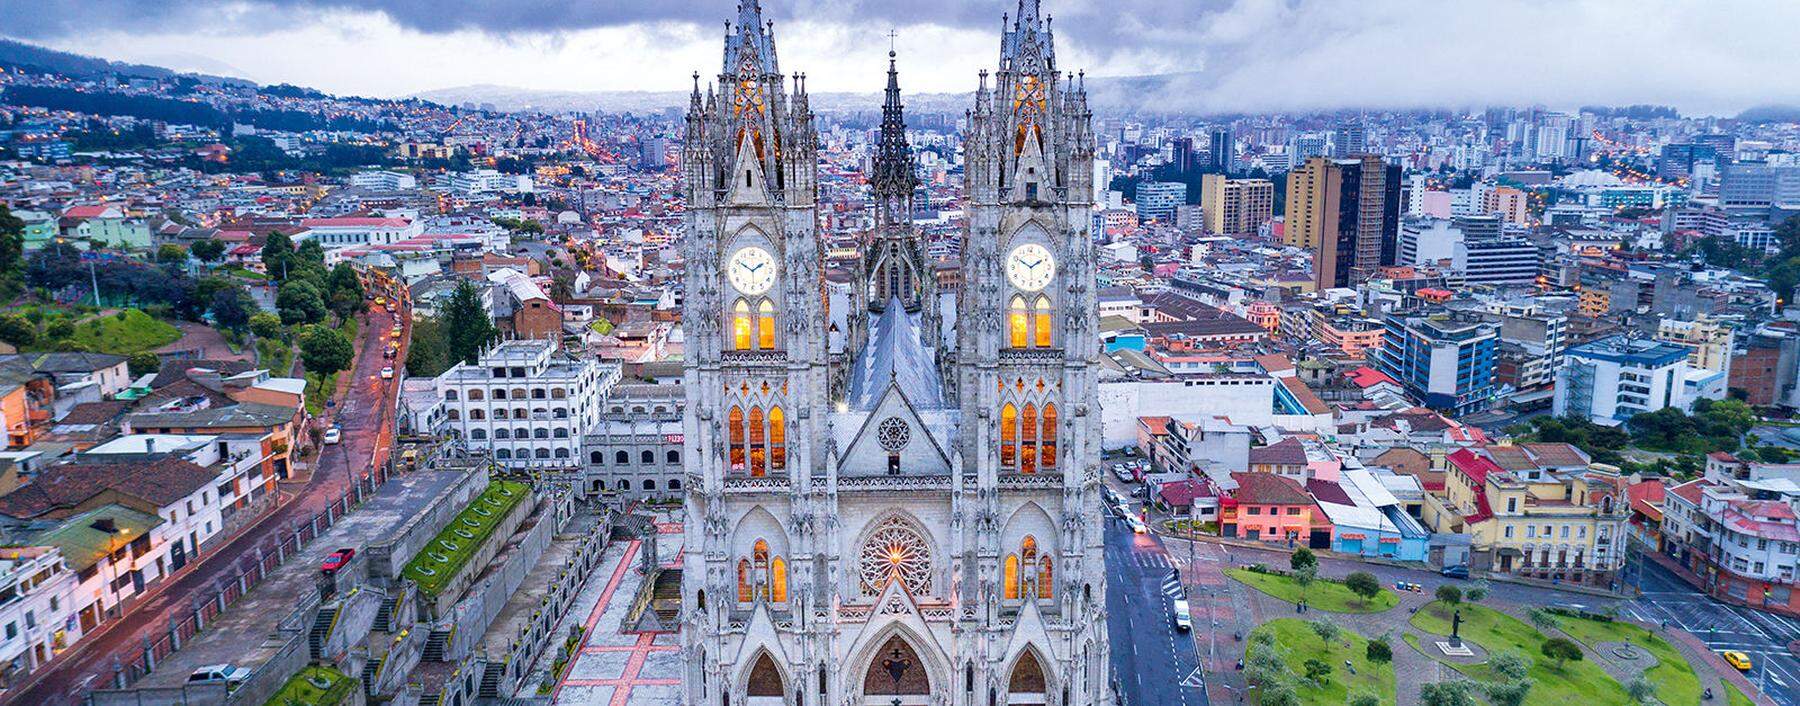 Basilica of the National Vow, Quito, Ecuador